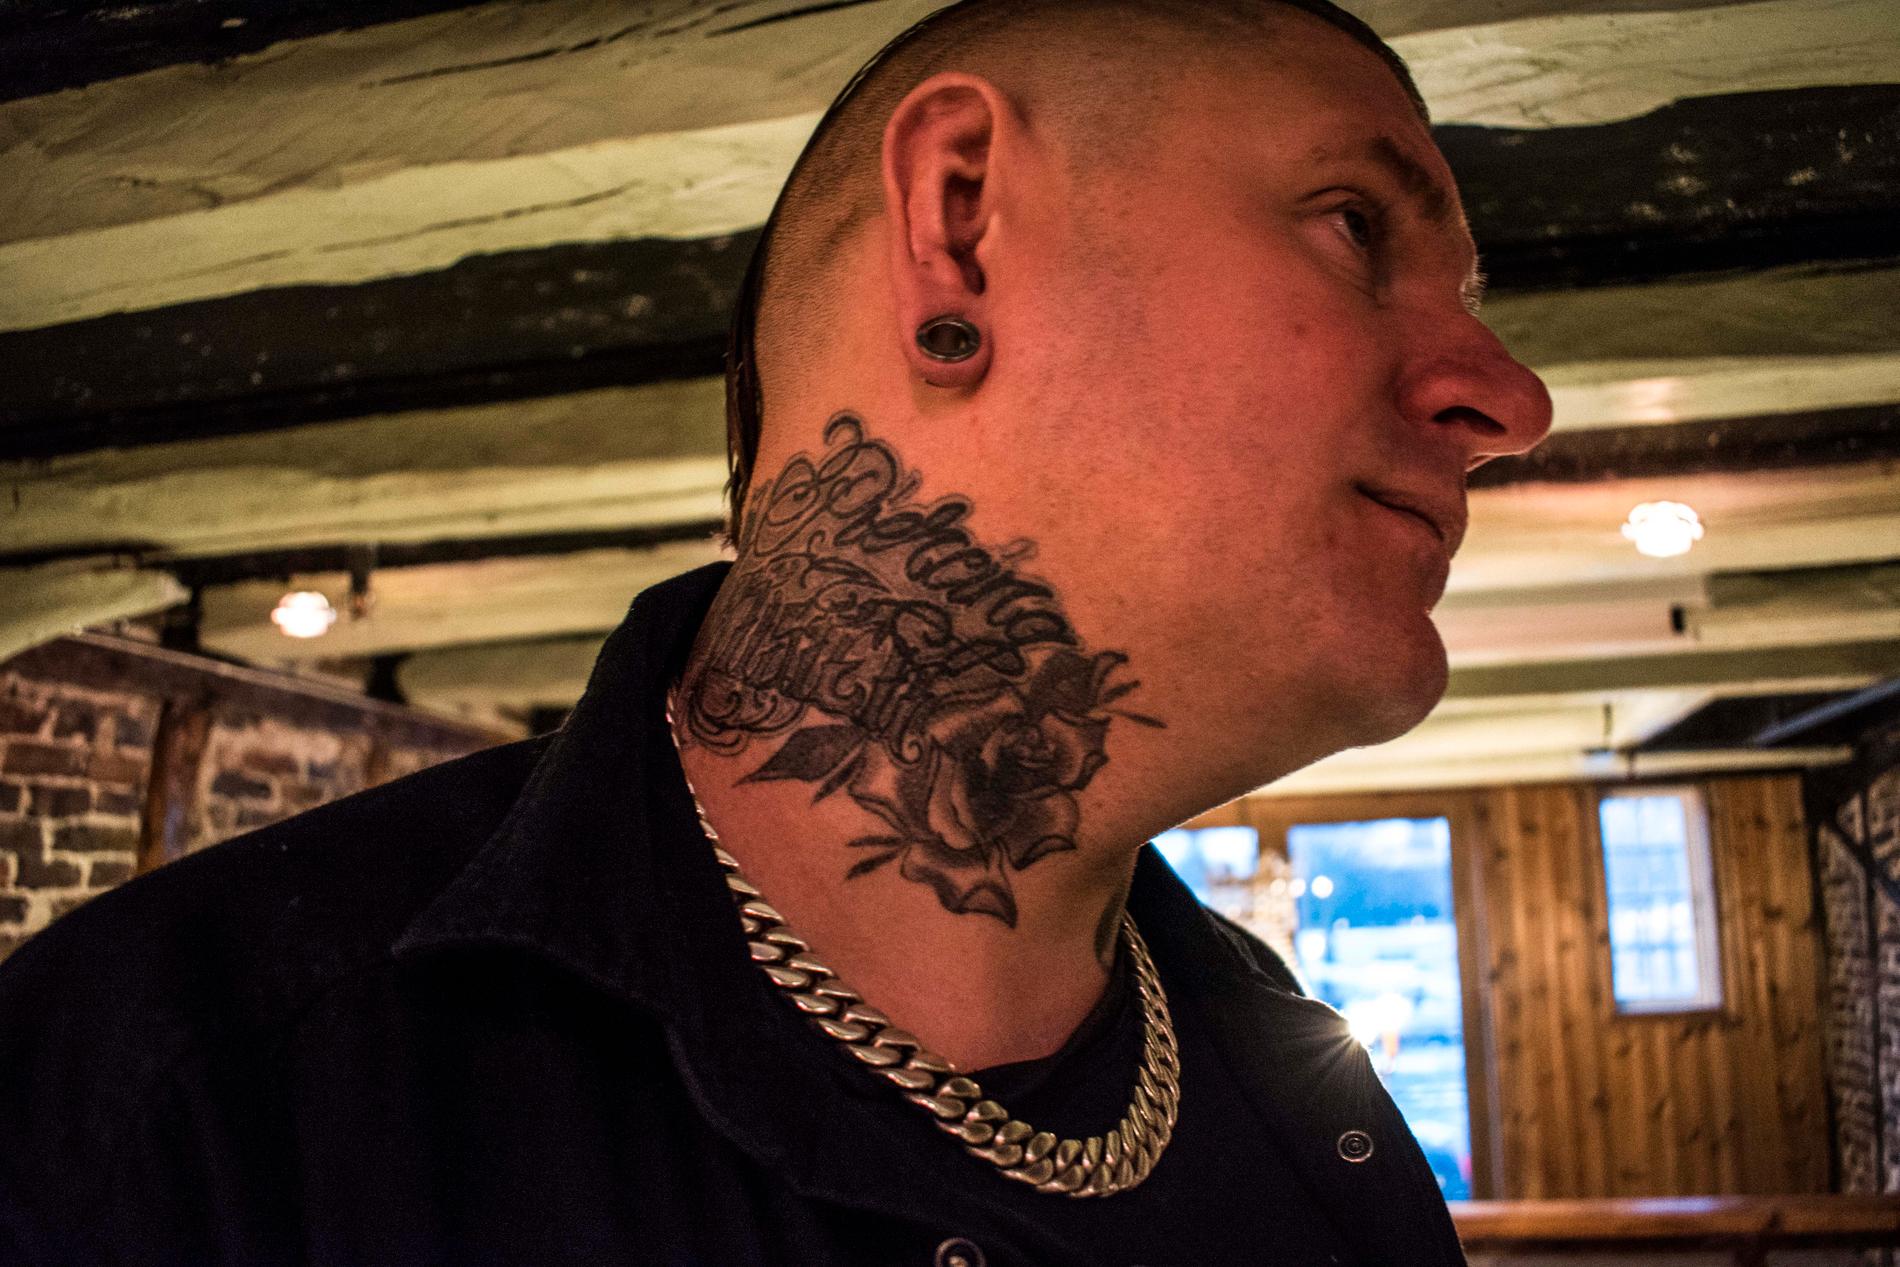 Det er svært få som kaller Anders Strøm for navnet hans, det går heller mer i Piercingartisten. Da han hadde hatt kallenavnet i ti år, tatoverte han det på halsen.